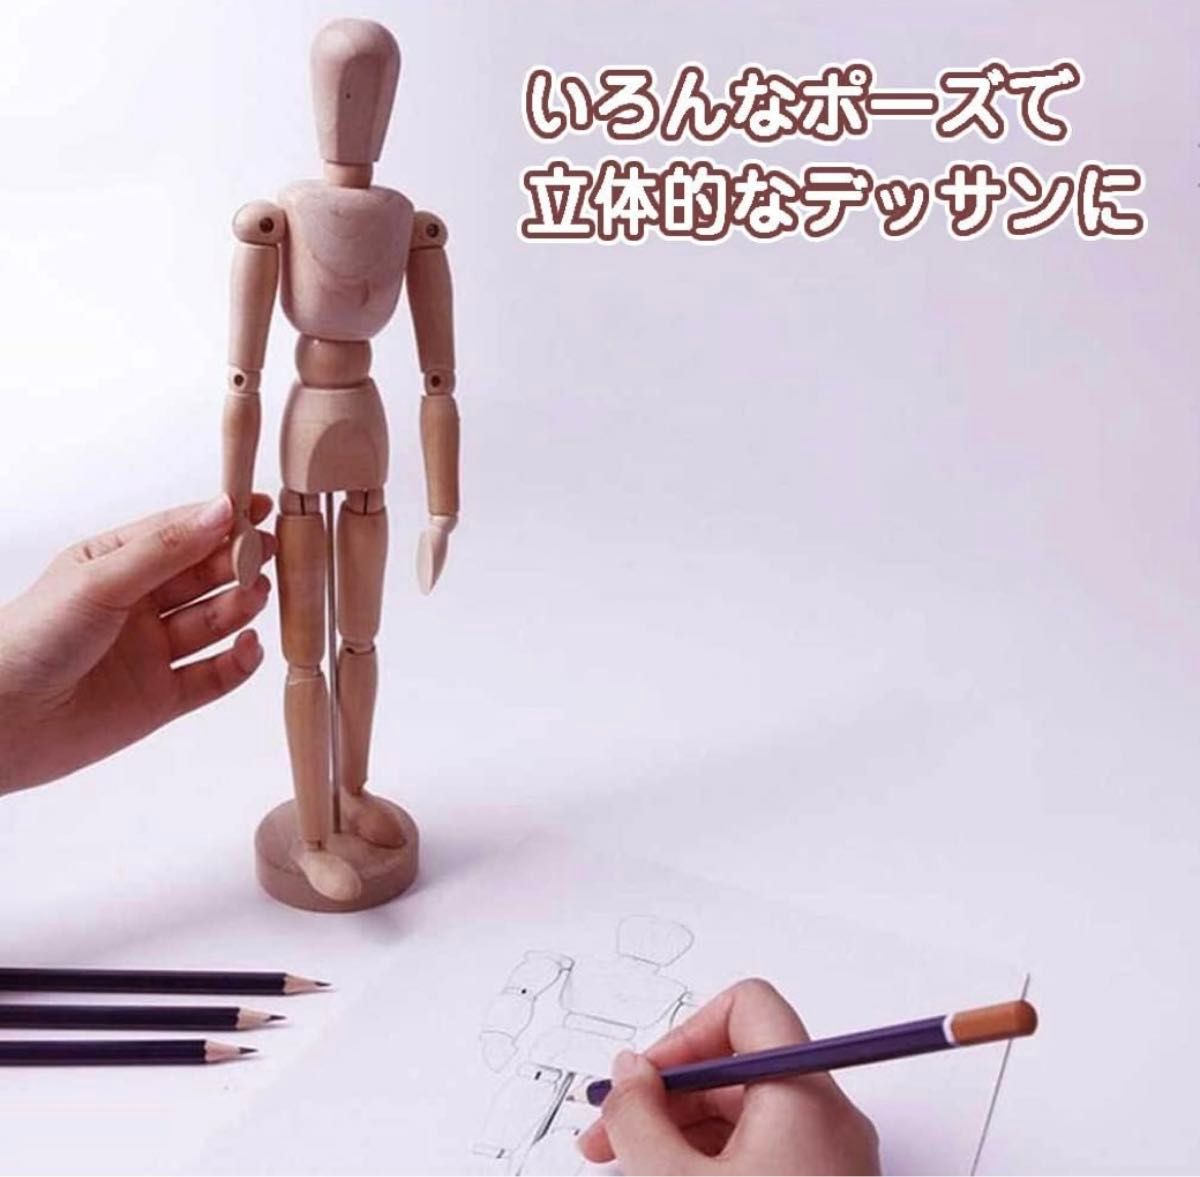 デッサン木製 モデル 可動式 漫画模型 マネキン 関節人形 素体 デッサン用 人形 フィギュア 美術 ドール 木の人形 絵 置物